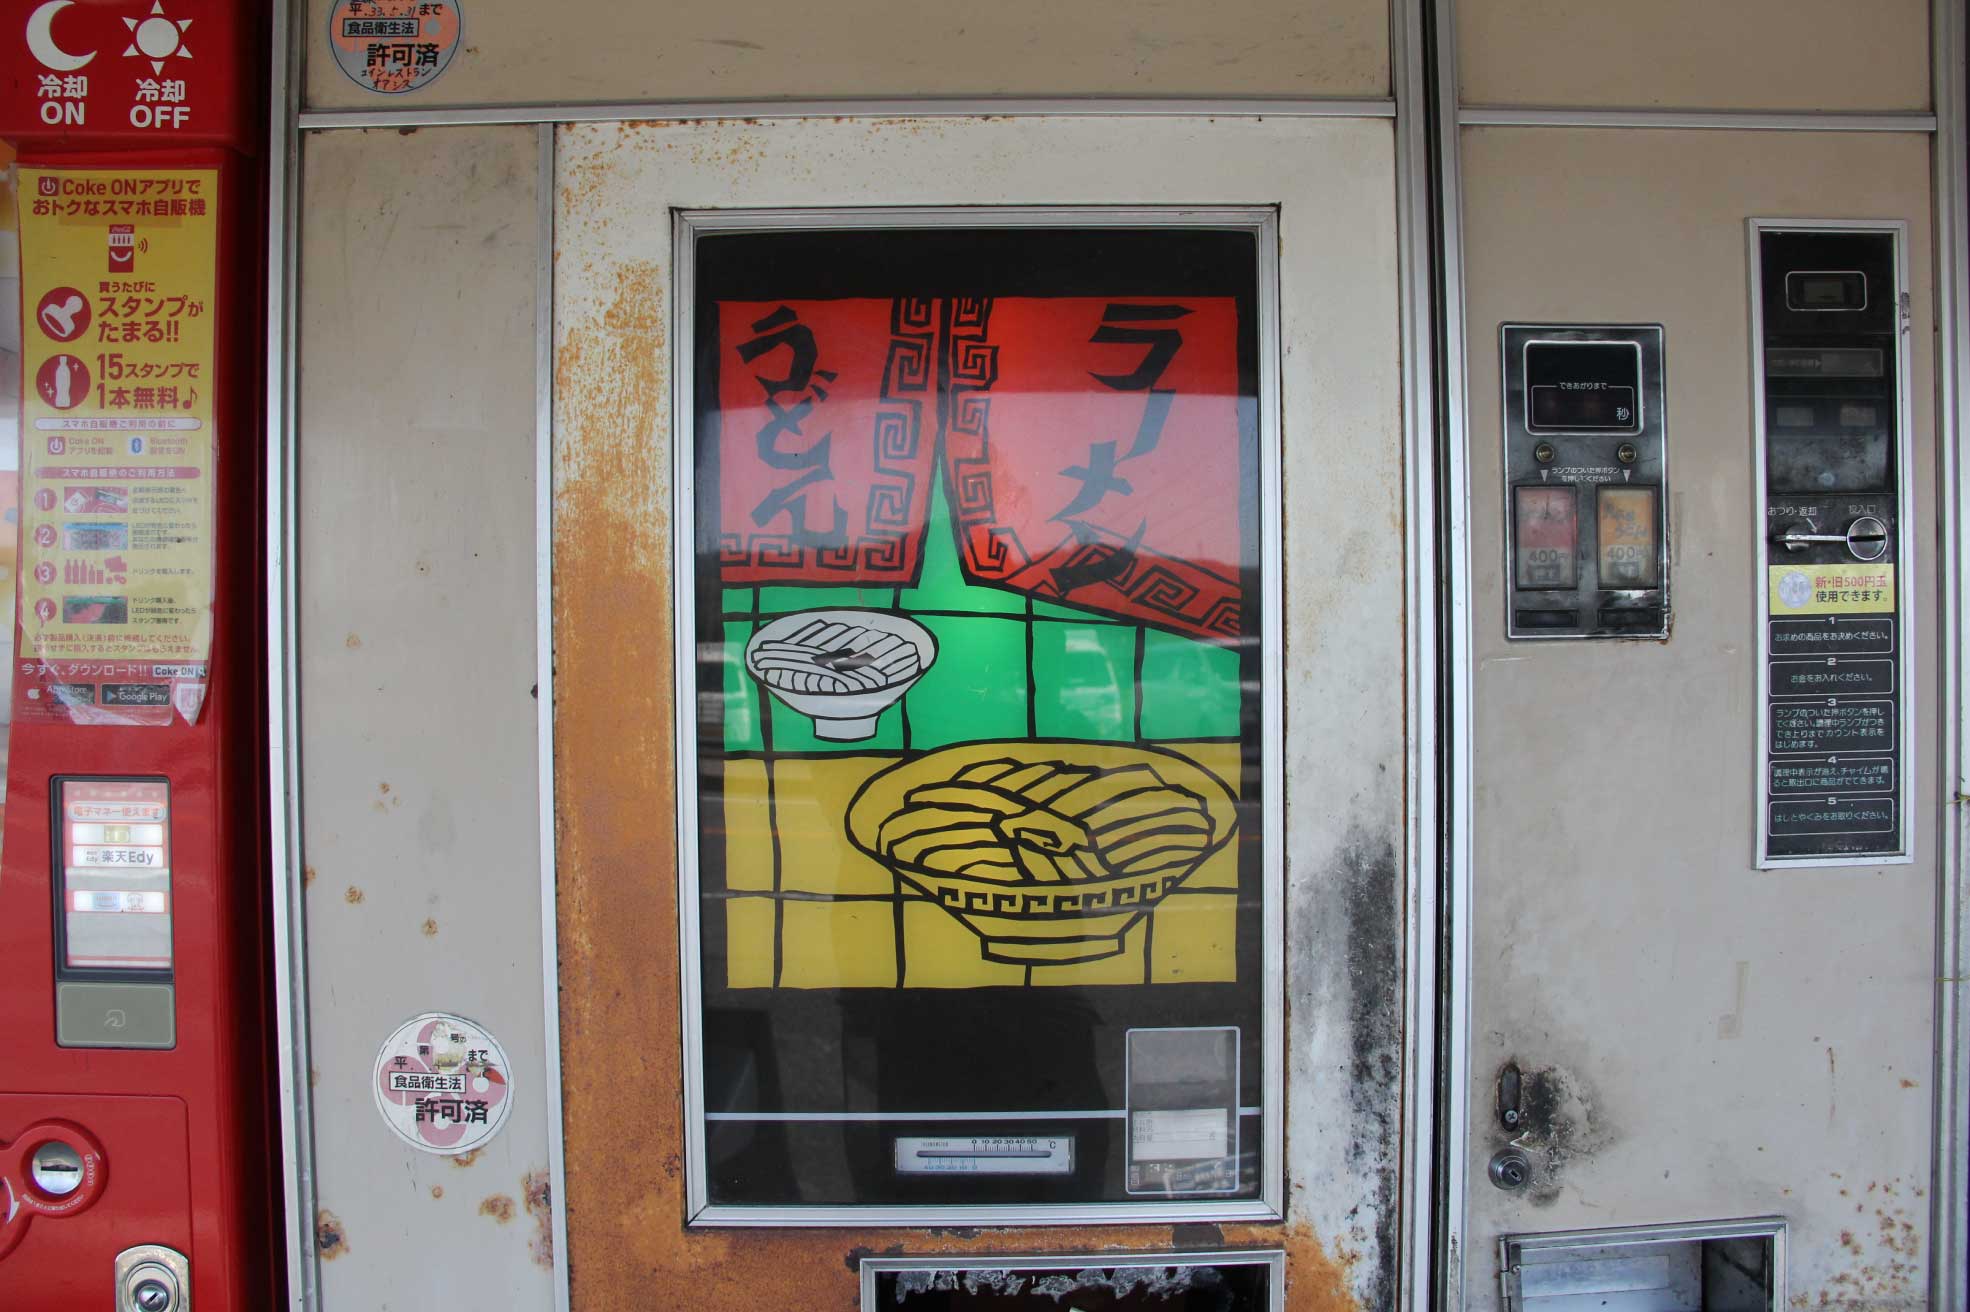 島根県益田市のレトロ自販機スポット『オアシス』に設置されているうどん自販機